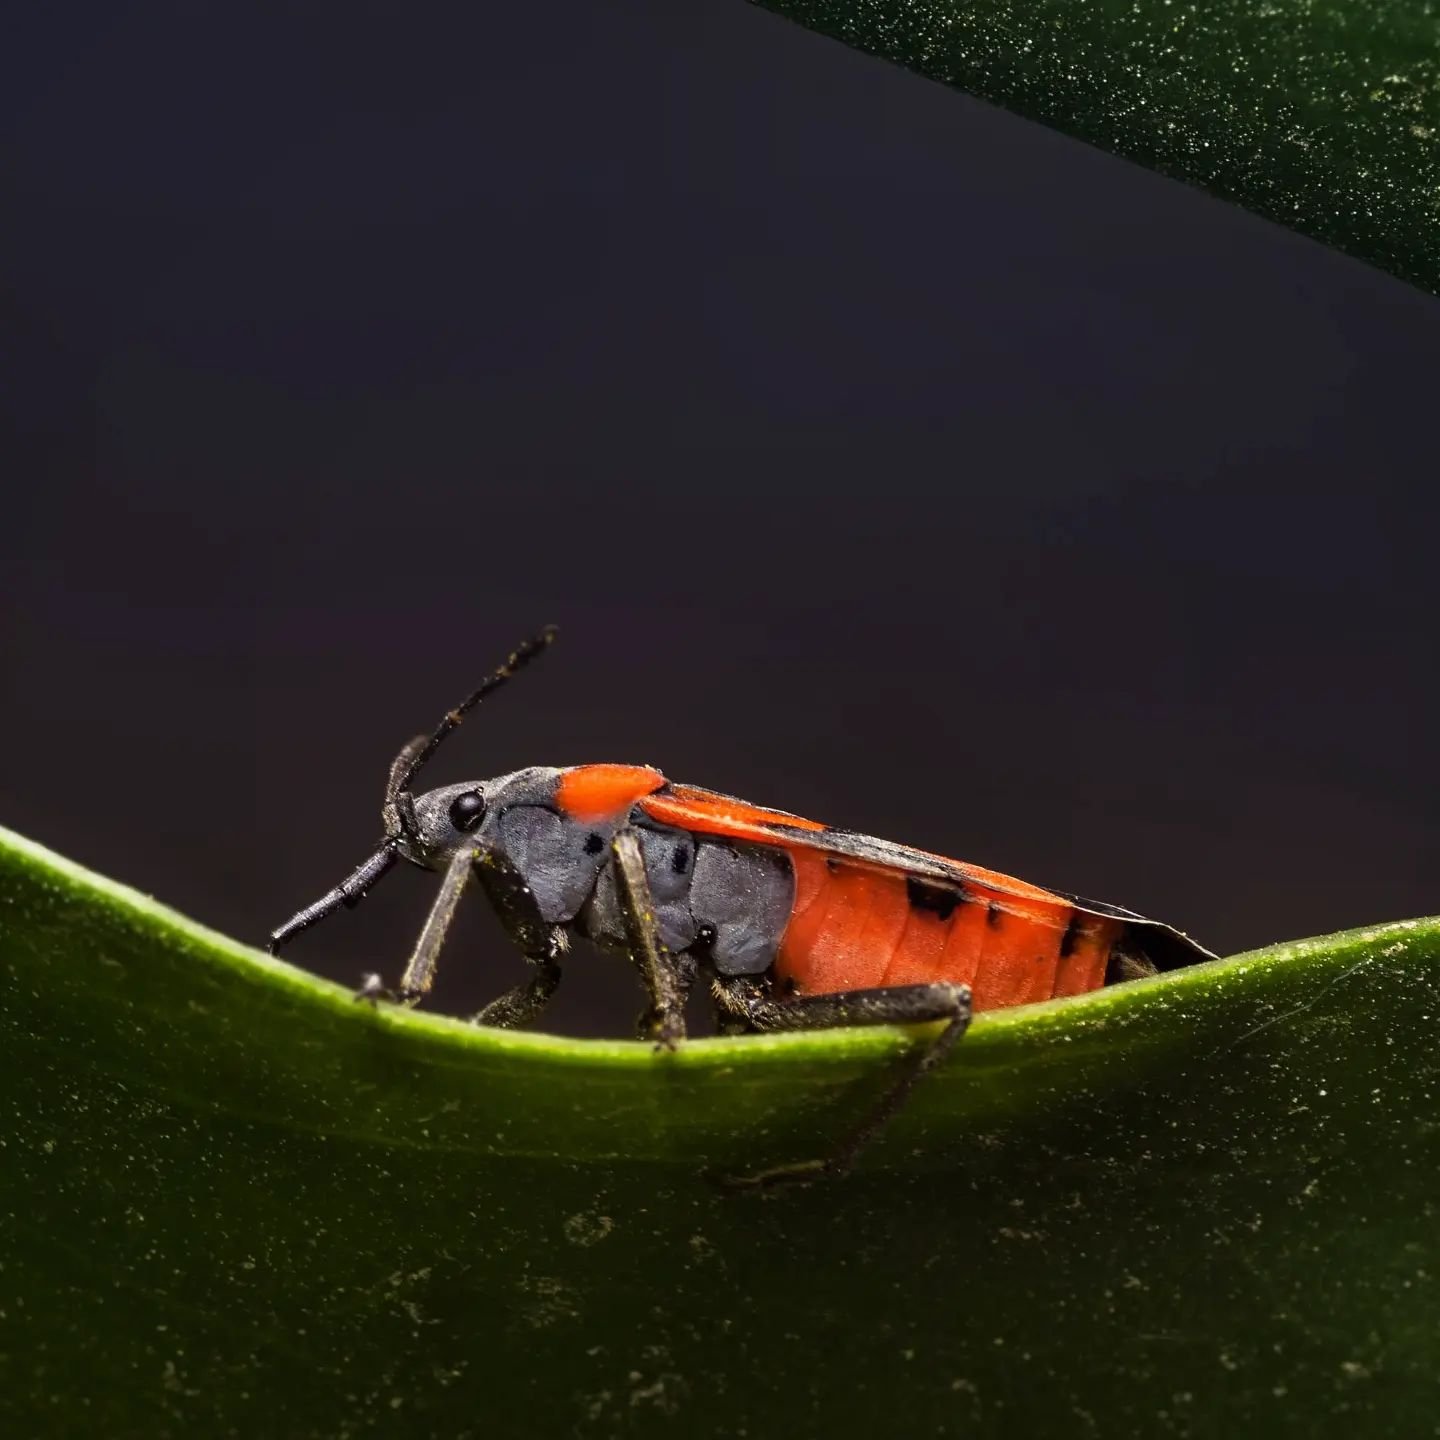 #milkweedbug #insect #macro #macrophotography #closeup #pentaxk1 #pentax_us #100mmmacro #100mm #wildlife ? #red #arizona